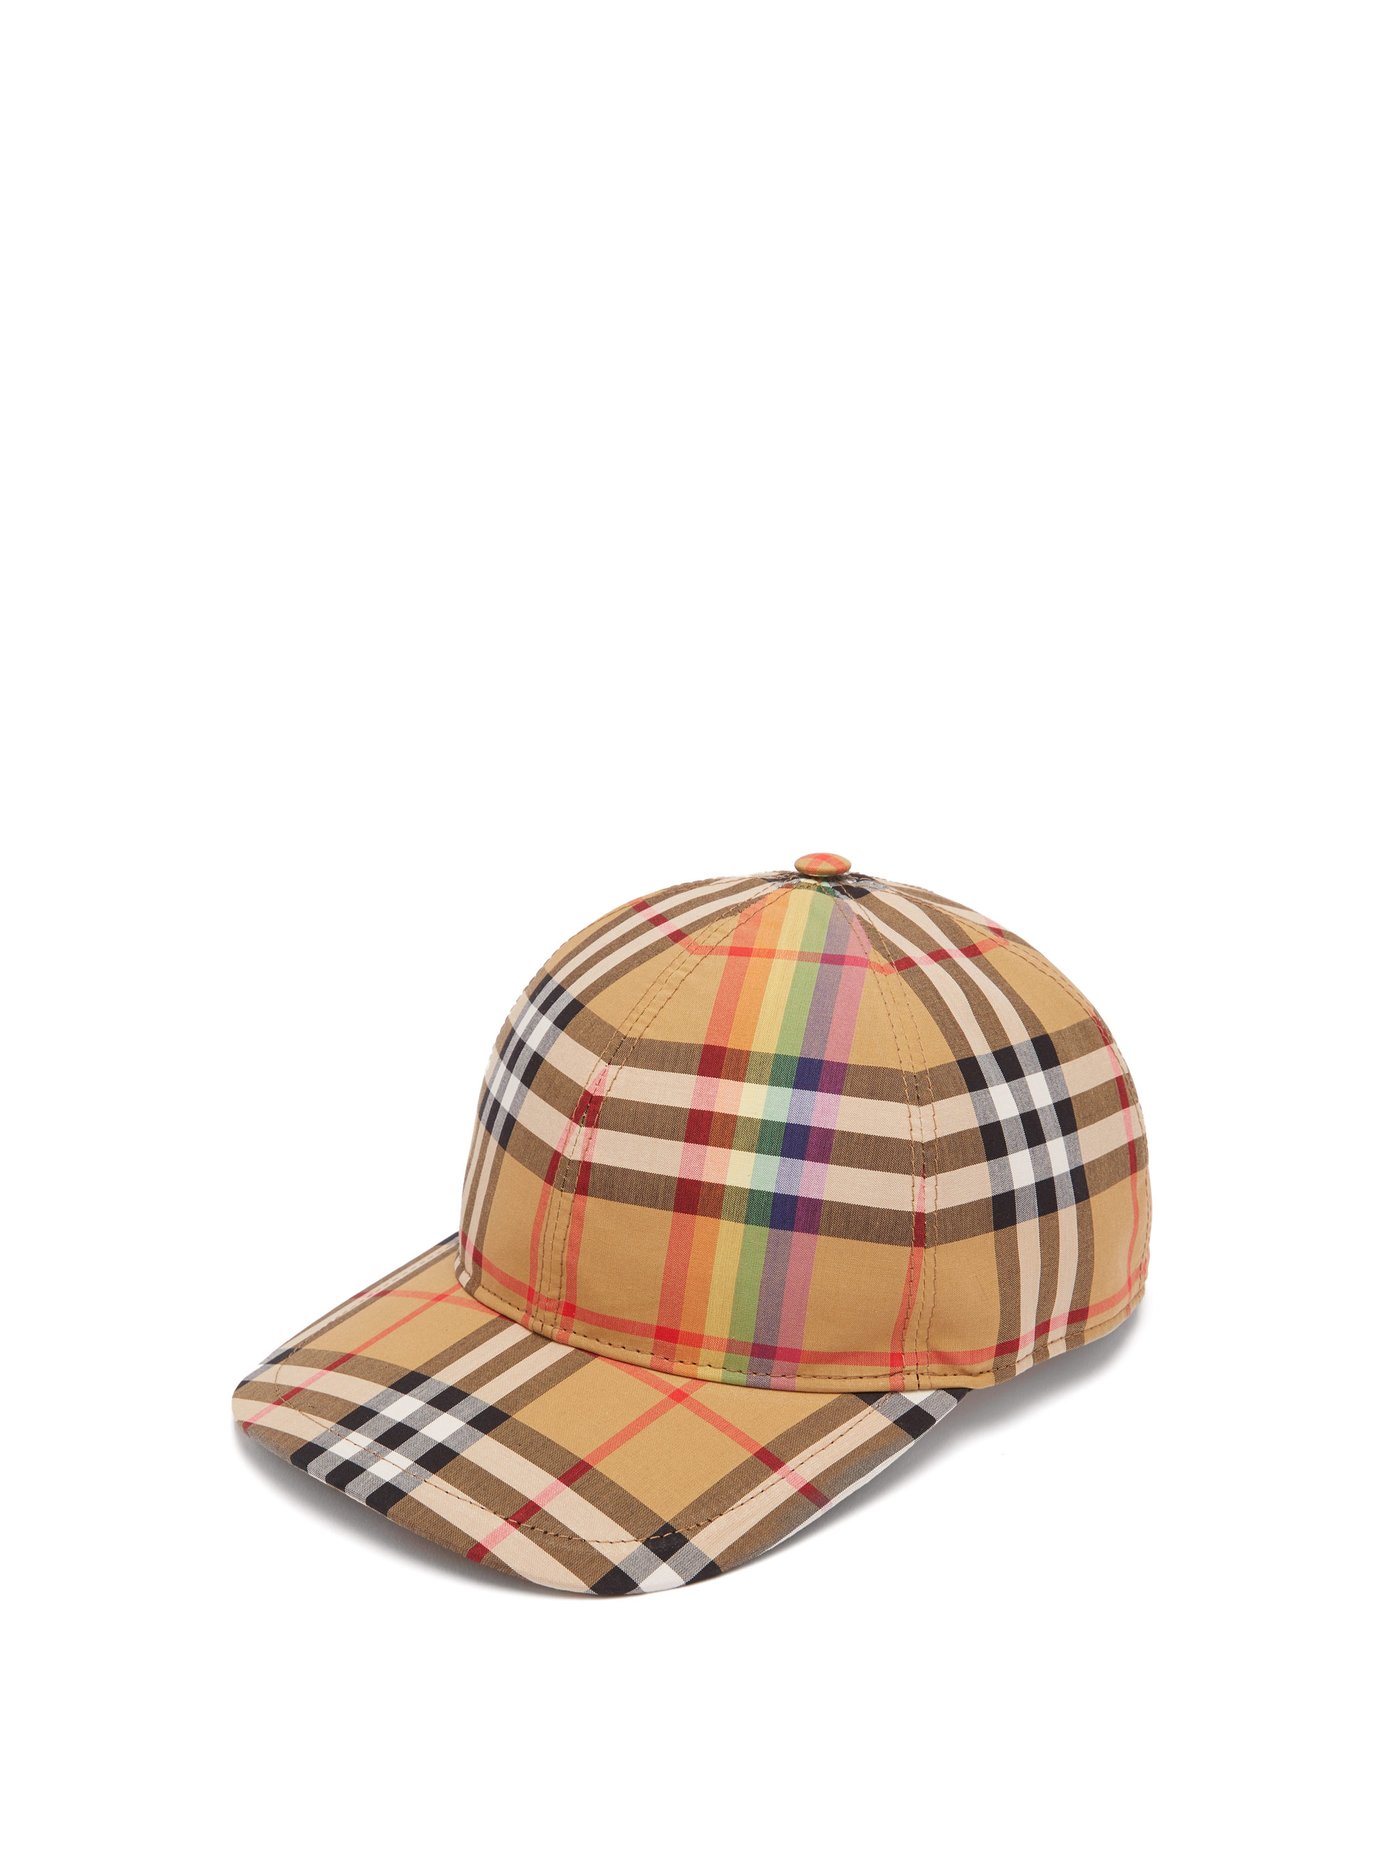 burberry hat rainbow